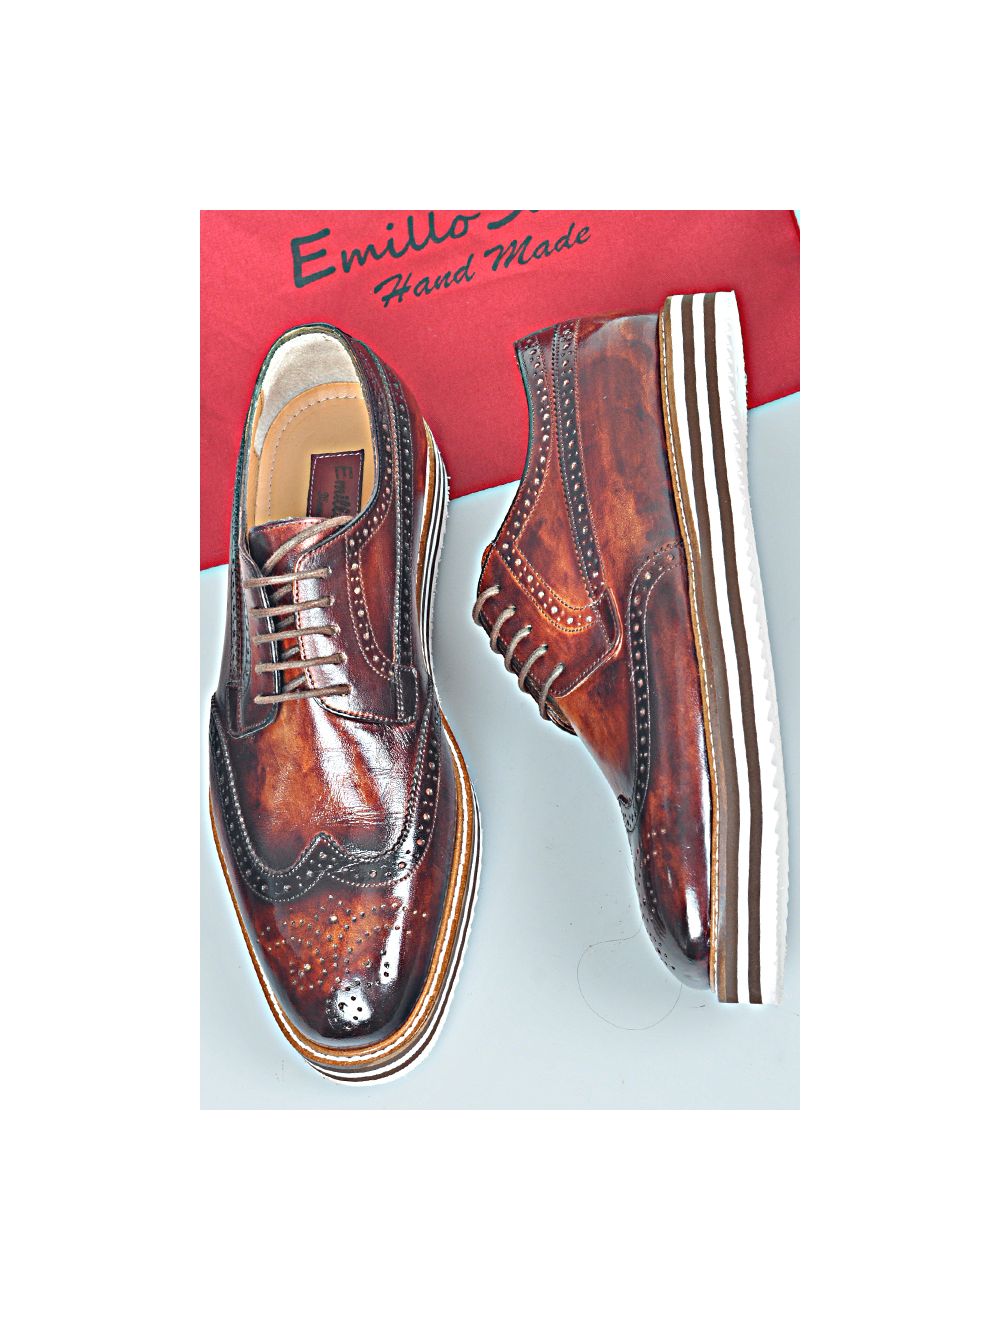 FELICE | Italian Handmade Sneaker Shoe Online for by Emillosanto